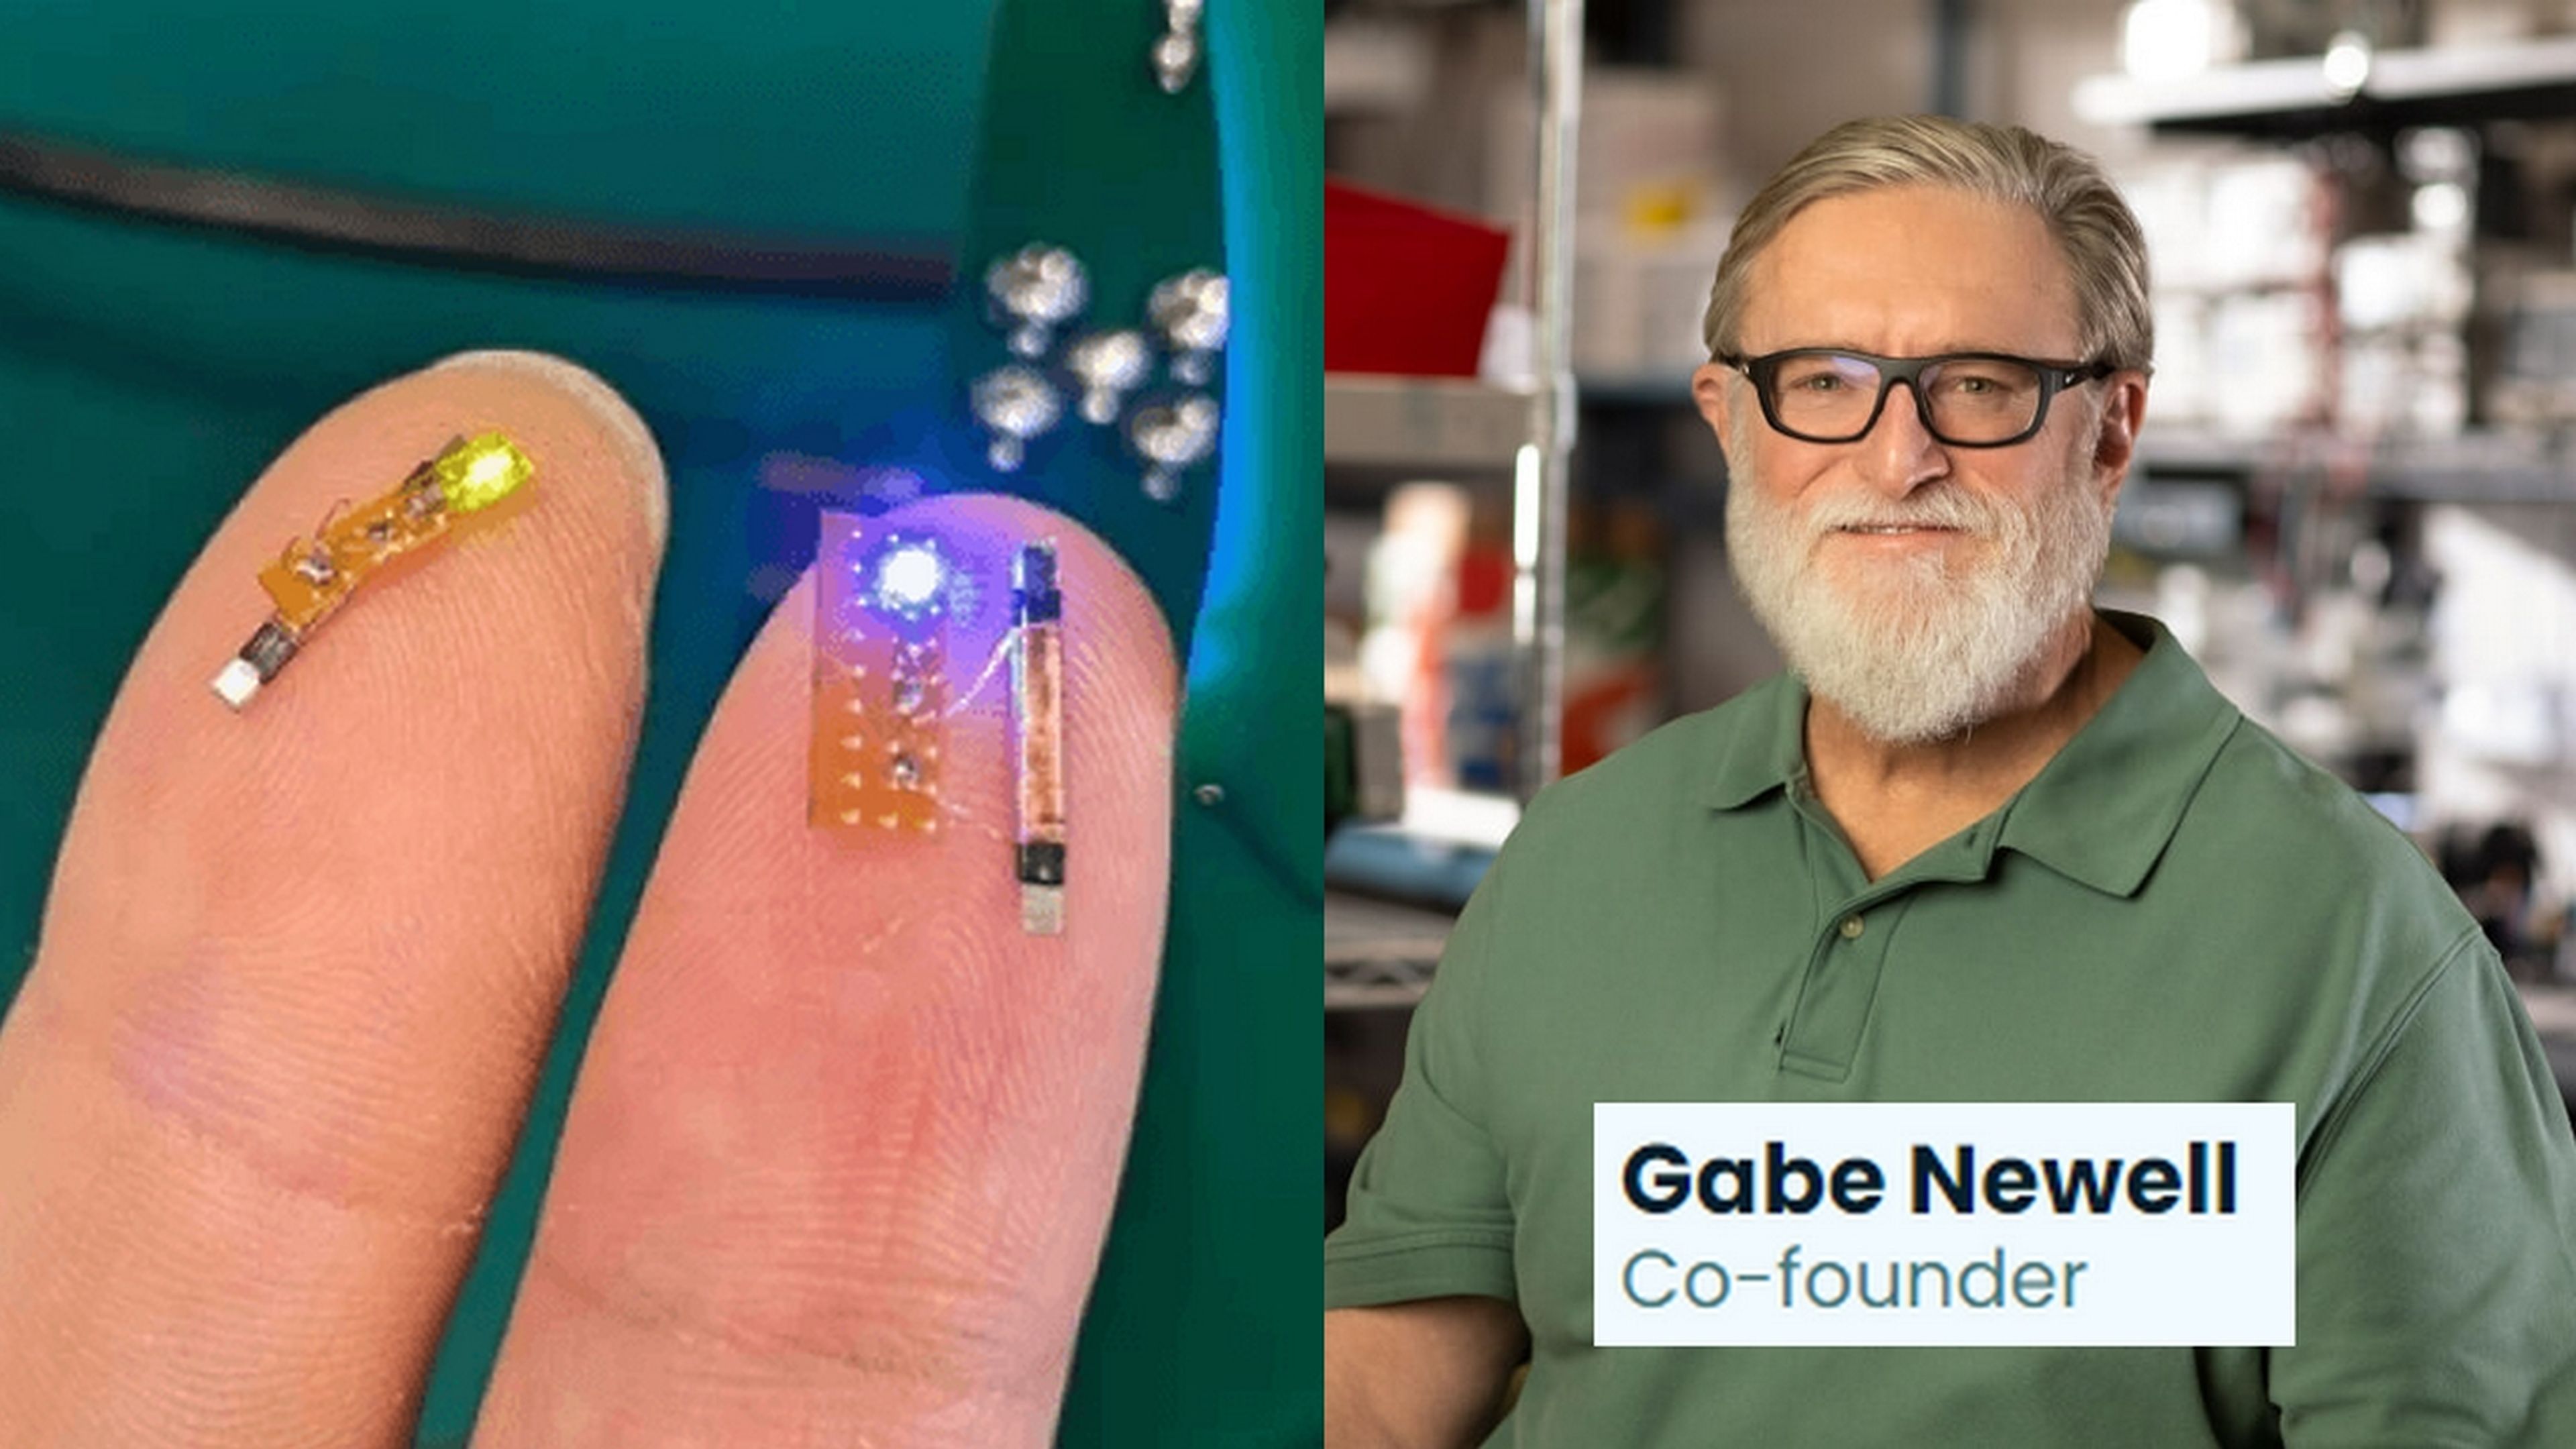 El fundador de Steam presenta su chip neural del tamaño de una uña, para competir con Neuralink de Elon Musk